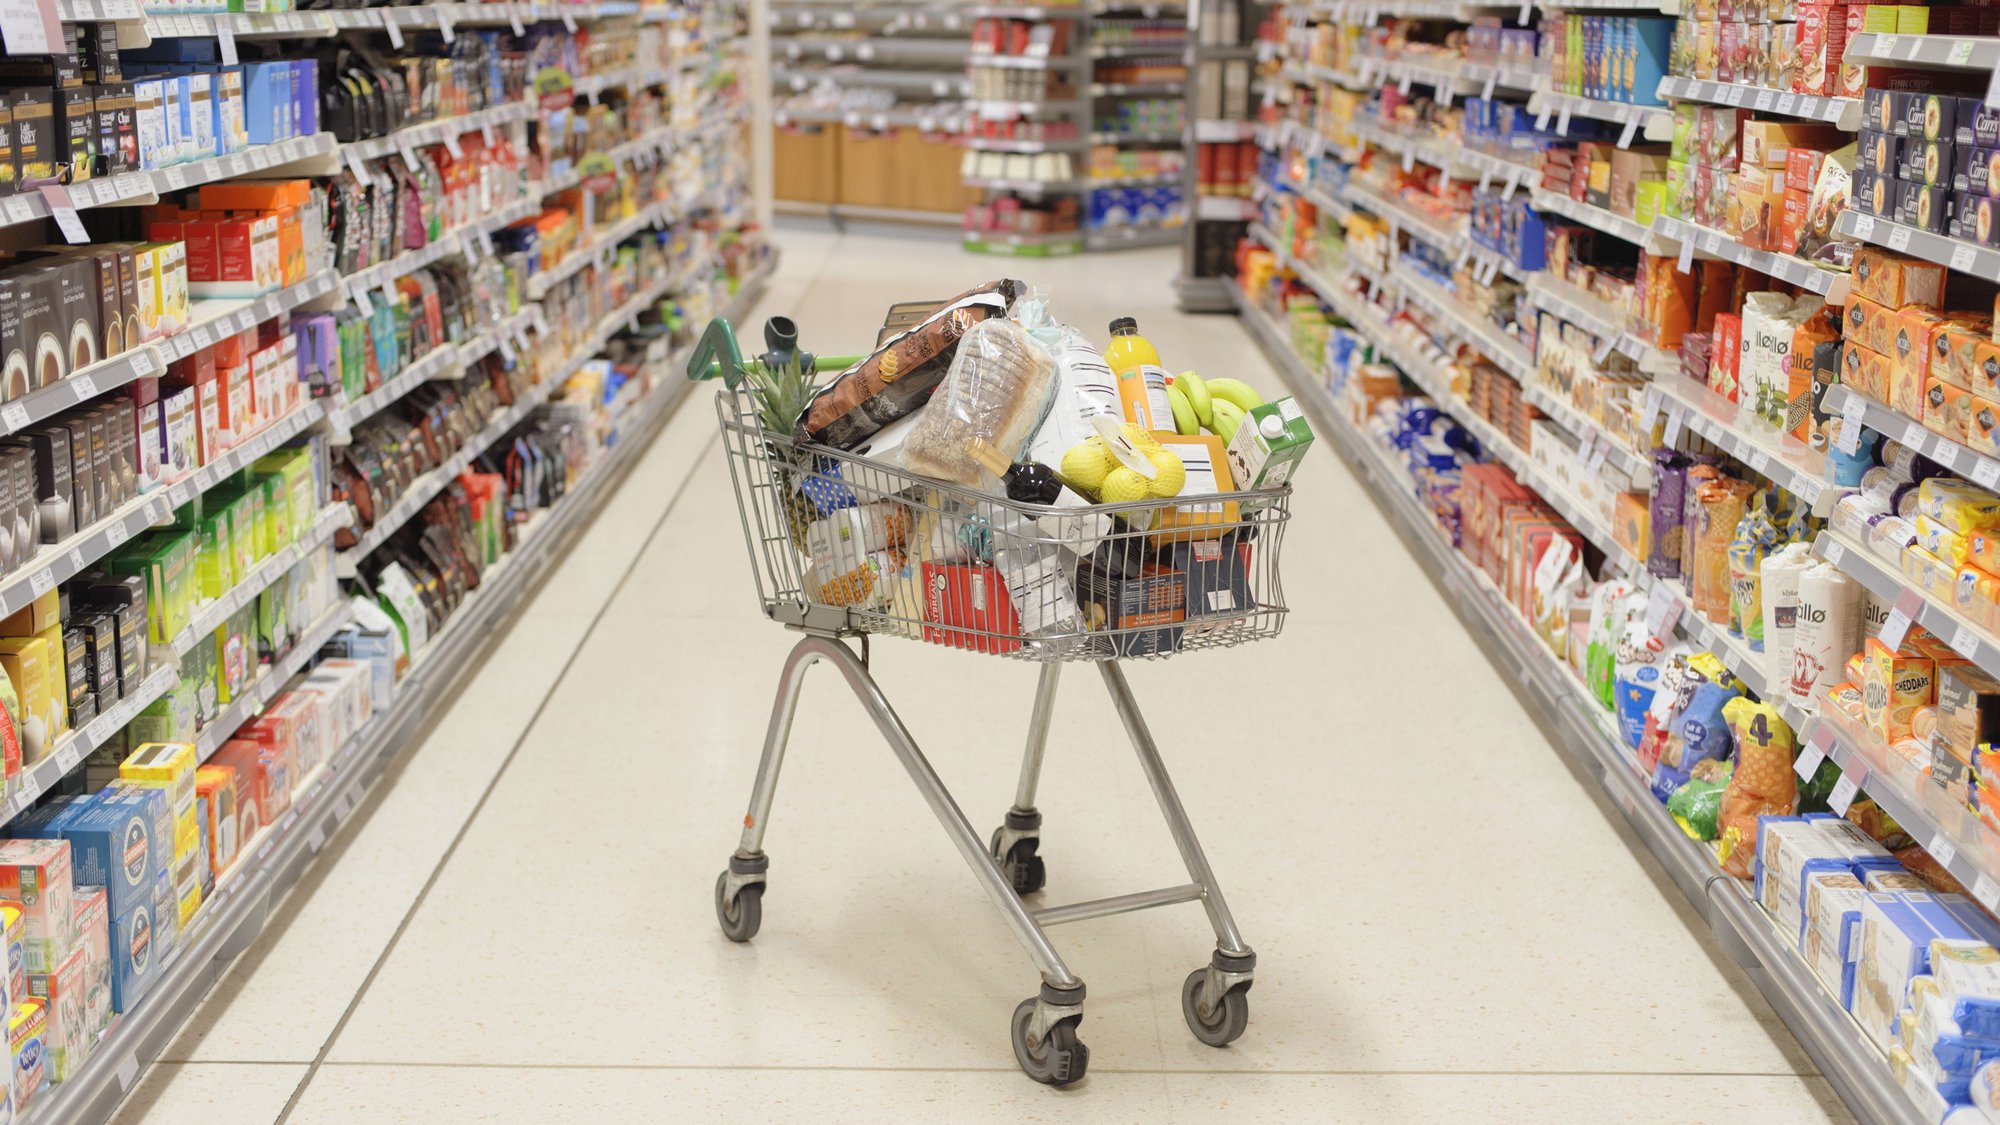 Mẹo đi siêu thị giúp gia đình tôi tiết kiệm hơn, áp dụng giảm được 24 triệu/tháng trong vấn đề chi tiêu  - Ảnh 3.